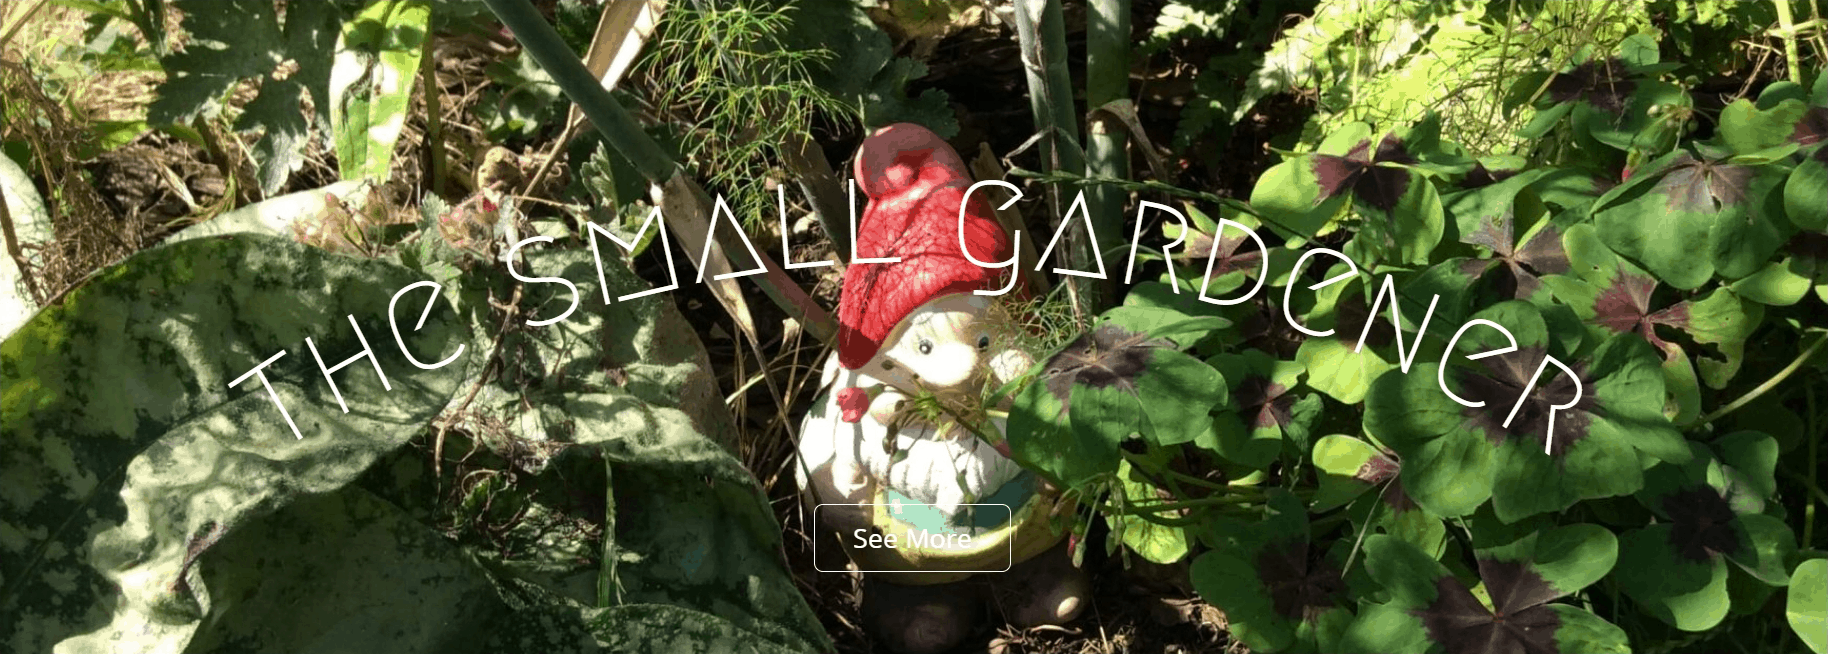 The Small Gardener blog banner